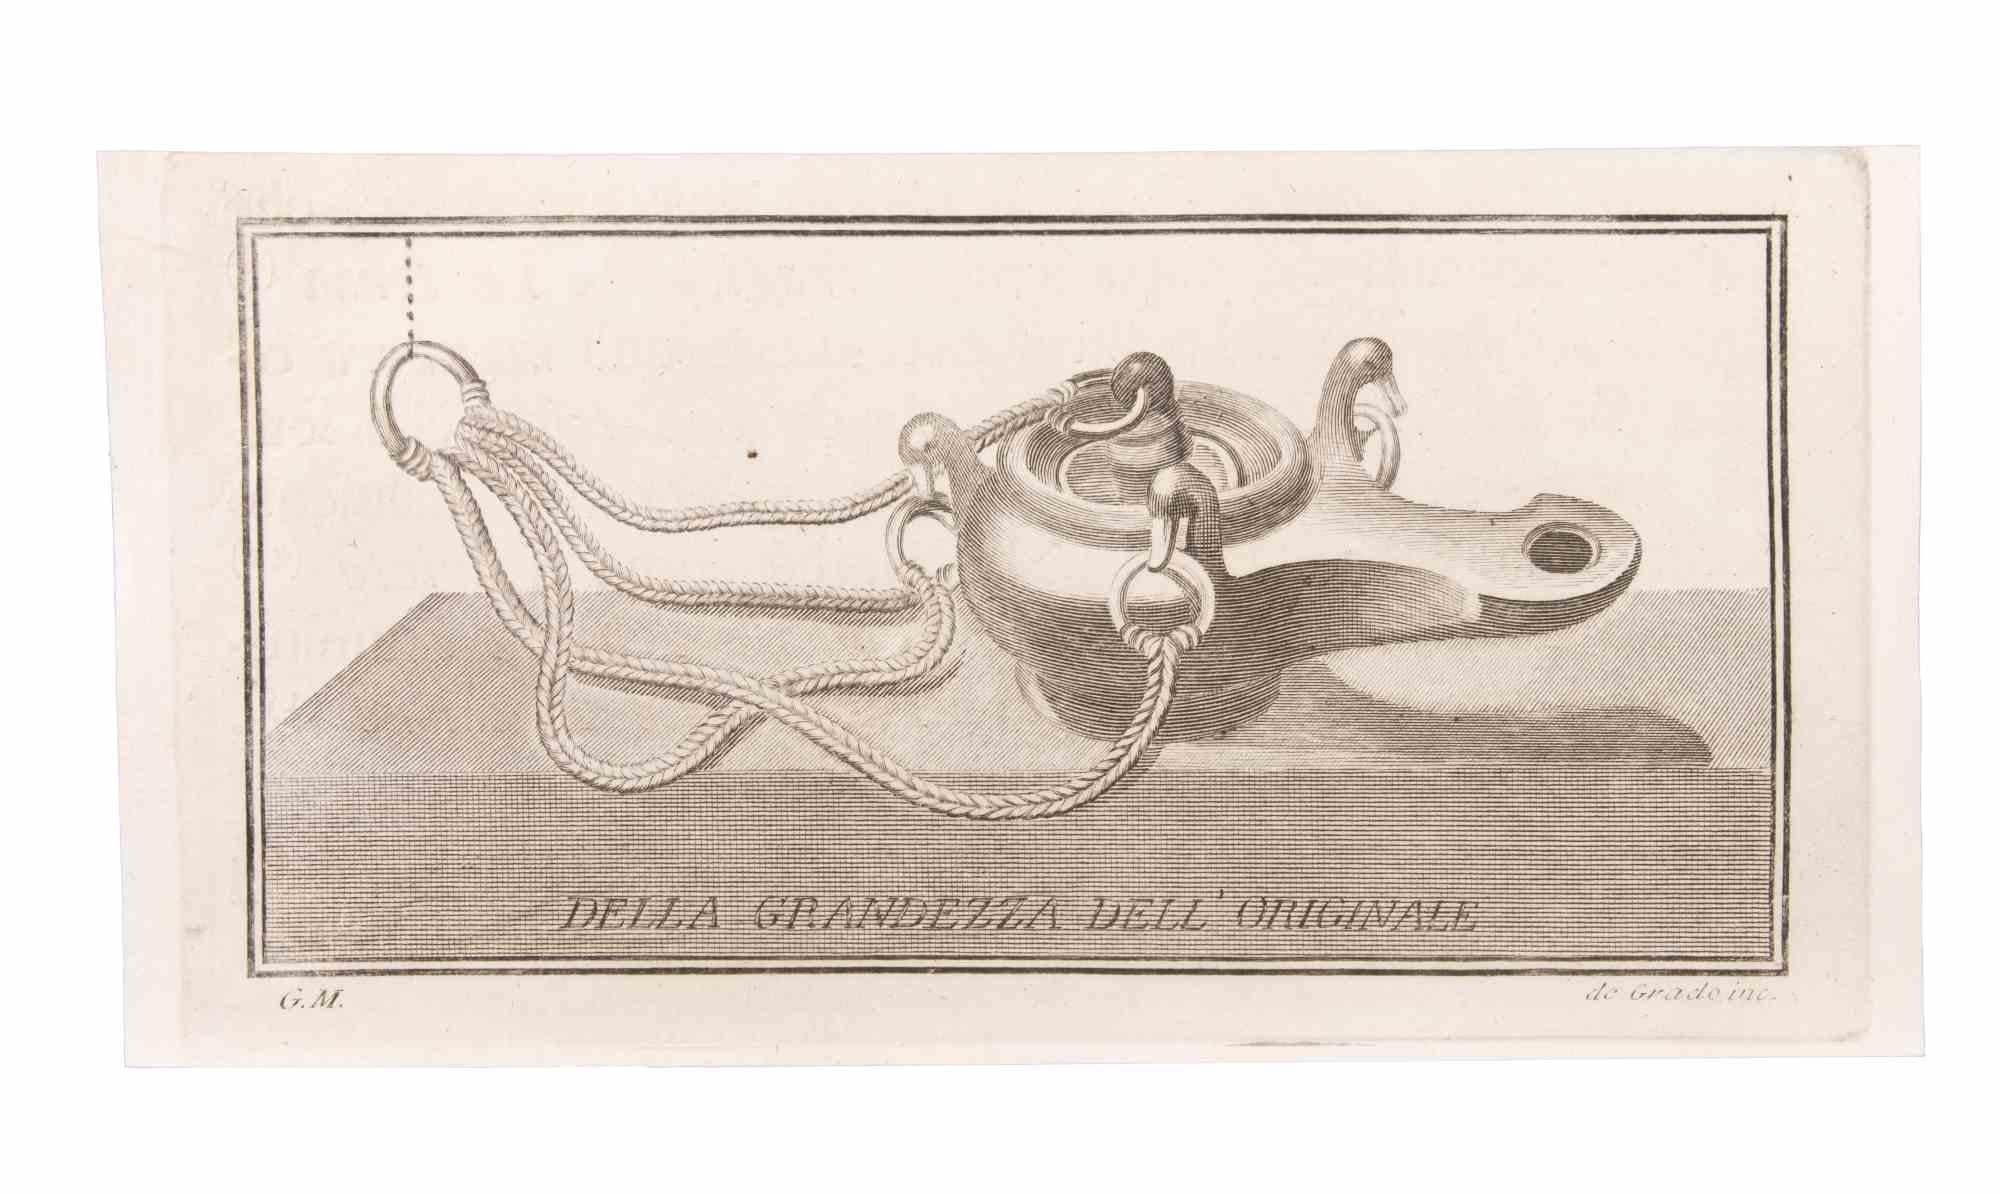 Öllampe zum Aufhängen ist eine Radierung realisiert von  Filippo de Grado (1705-1780).

Die Radierung gehört zu der Druckserie "Antiquities of Herculaneum Exposed" (Originaltitel: "Le Antichità di Ercolano Esposte"), einem achtbändigen Band mit